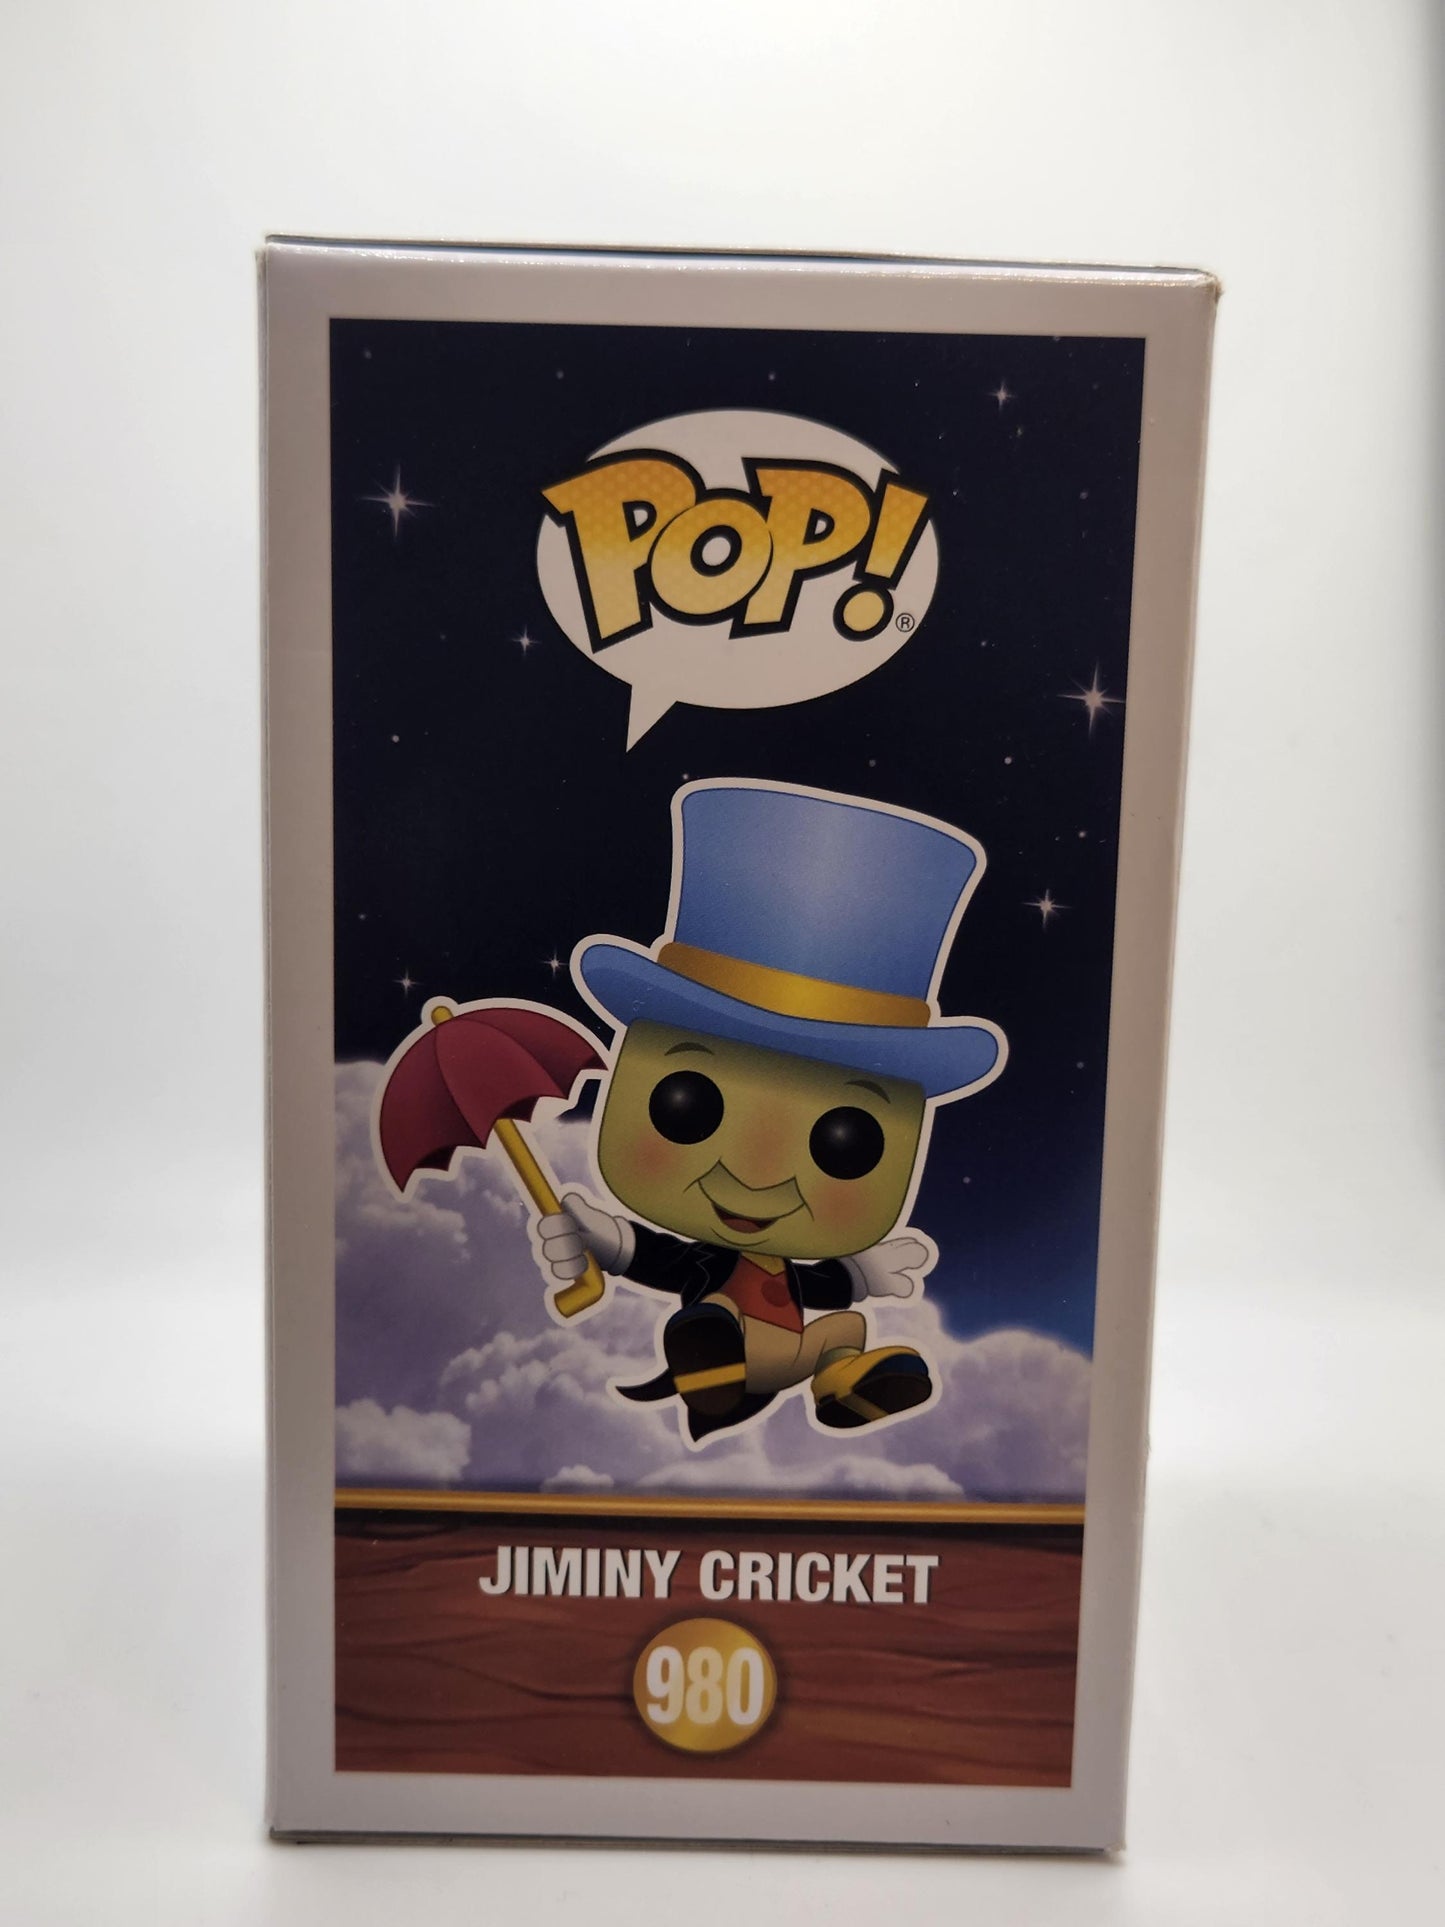 Jiminy Cricket - #980 - Box Condition 7/10